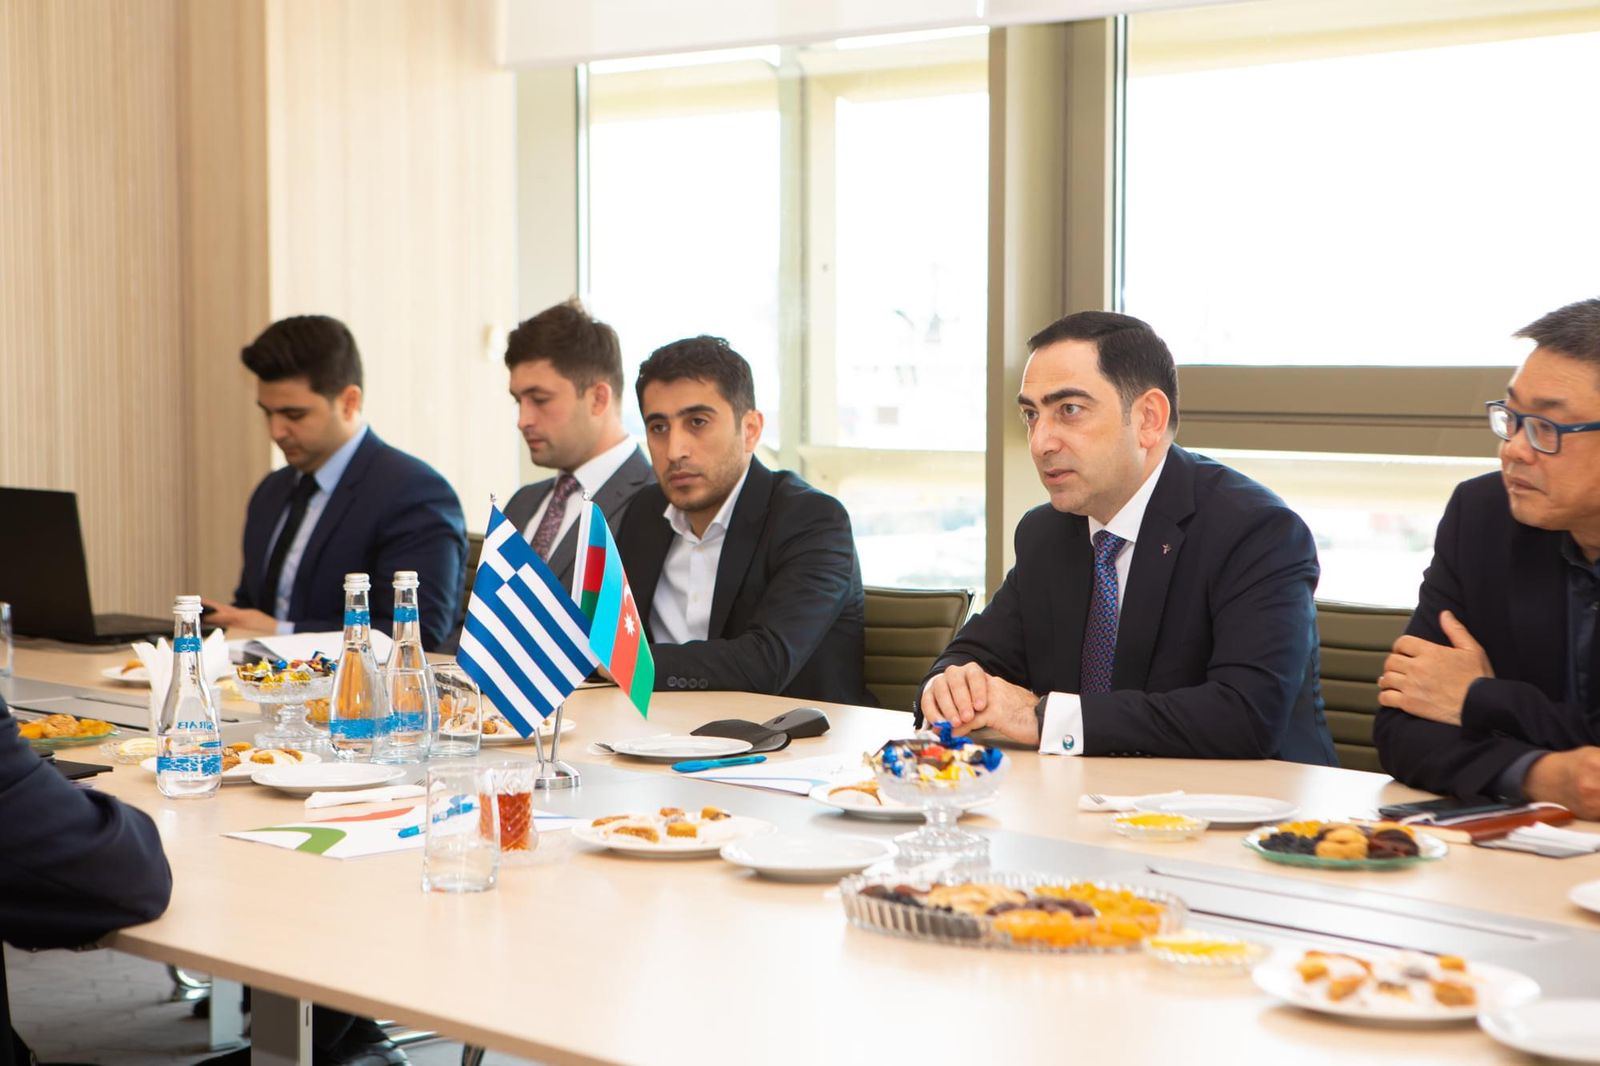 Связи между портами Азербайджана  и Греции будут укрепляться - посол Греции (ФОТО)